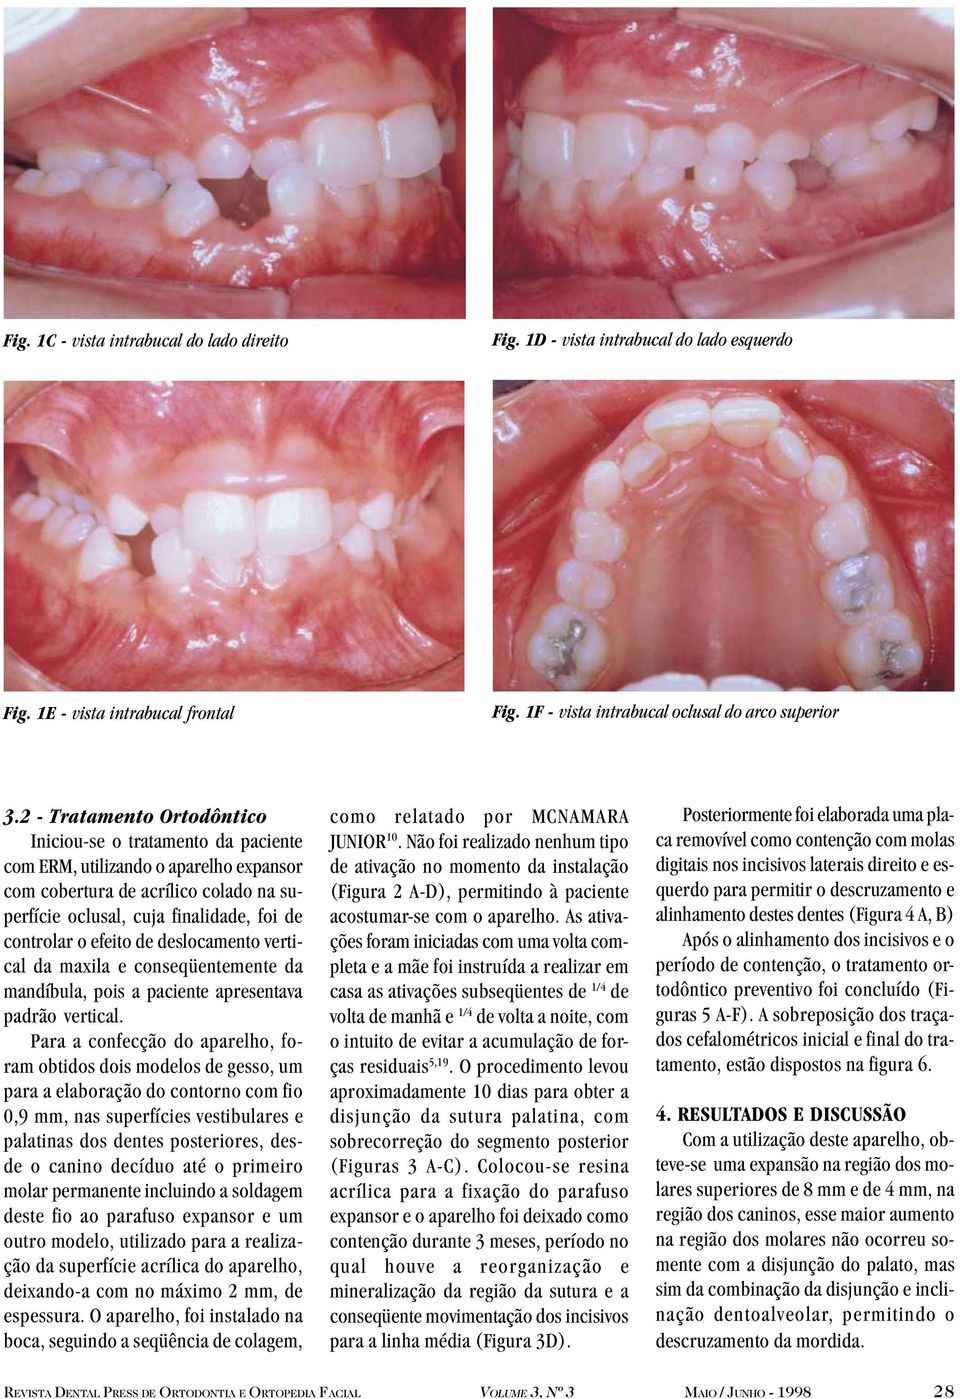 efeito de deslocamento vertical da maxila e conseqüentemente da mandíbula, pois a paciente apresentava padrão vertical.